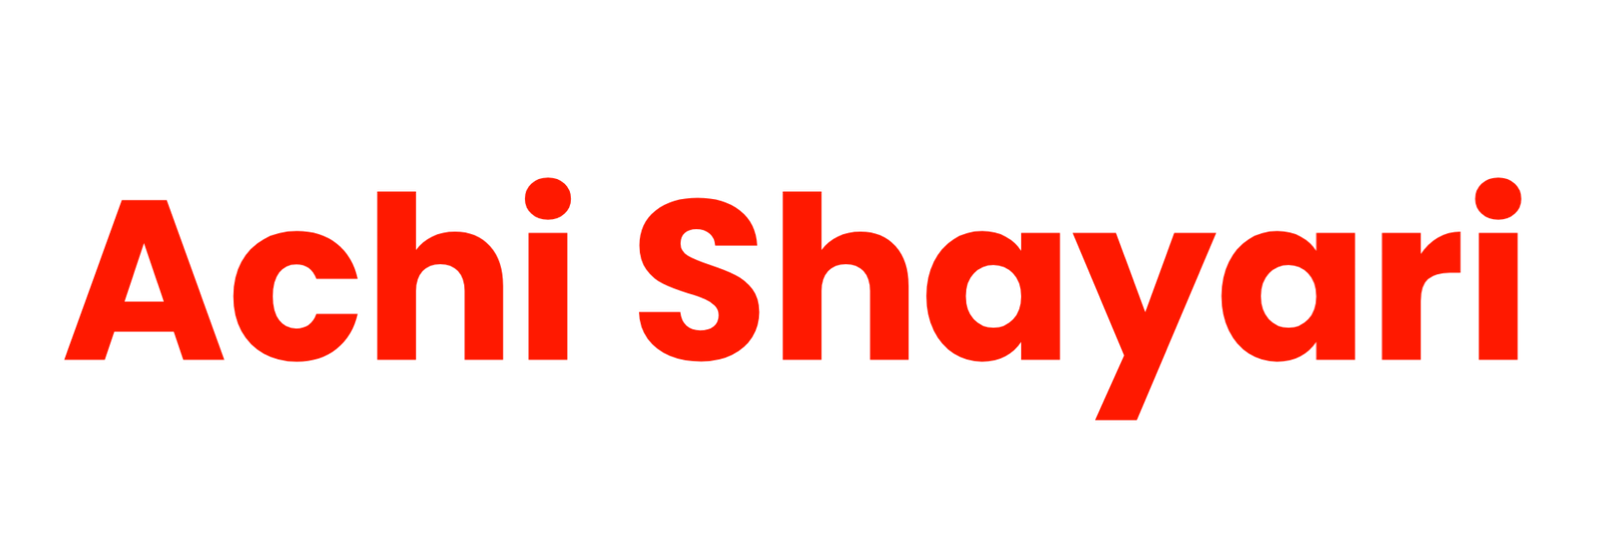 Achi Shayari